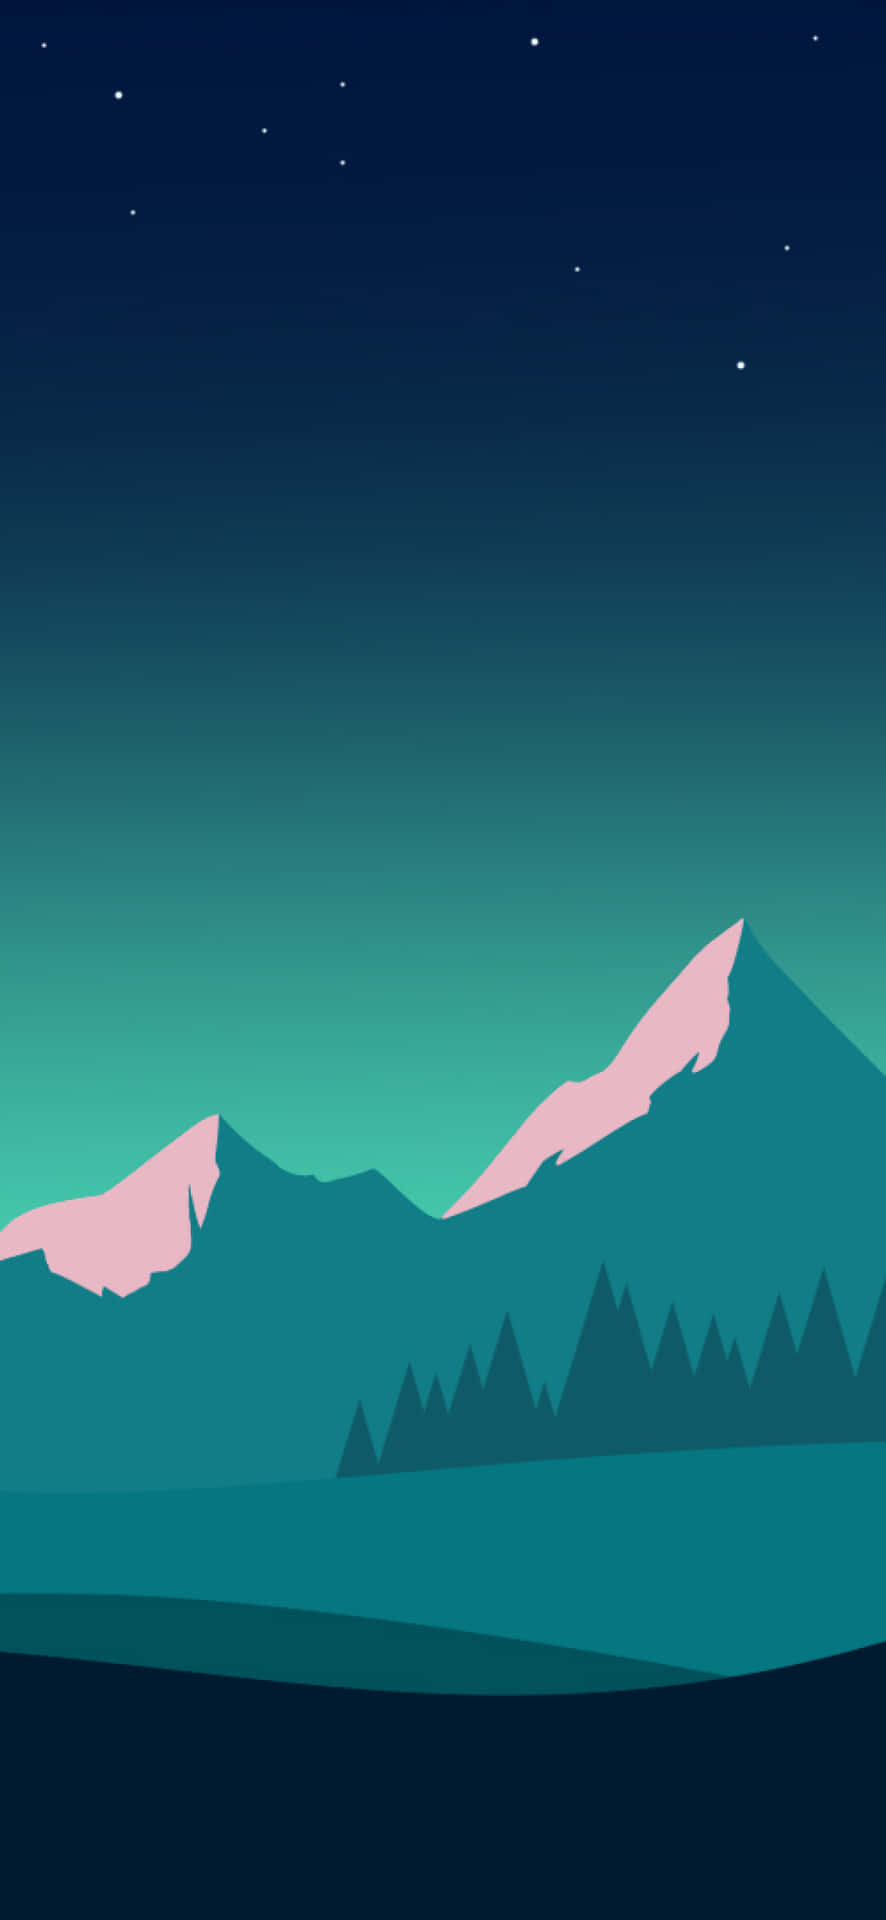 Starry Night Mountain Illustration Wallpaper